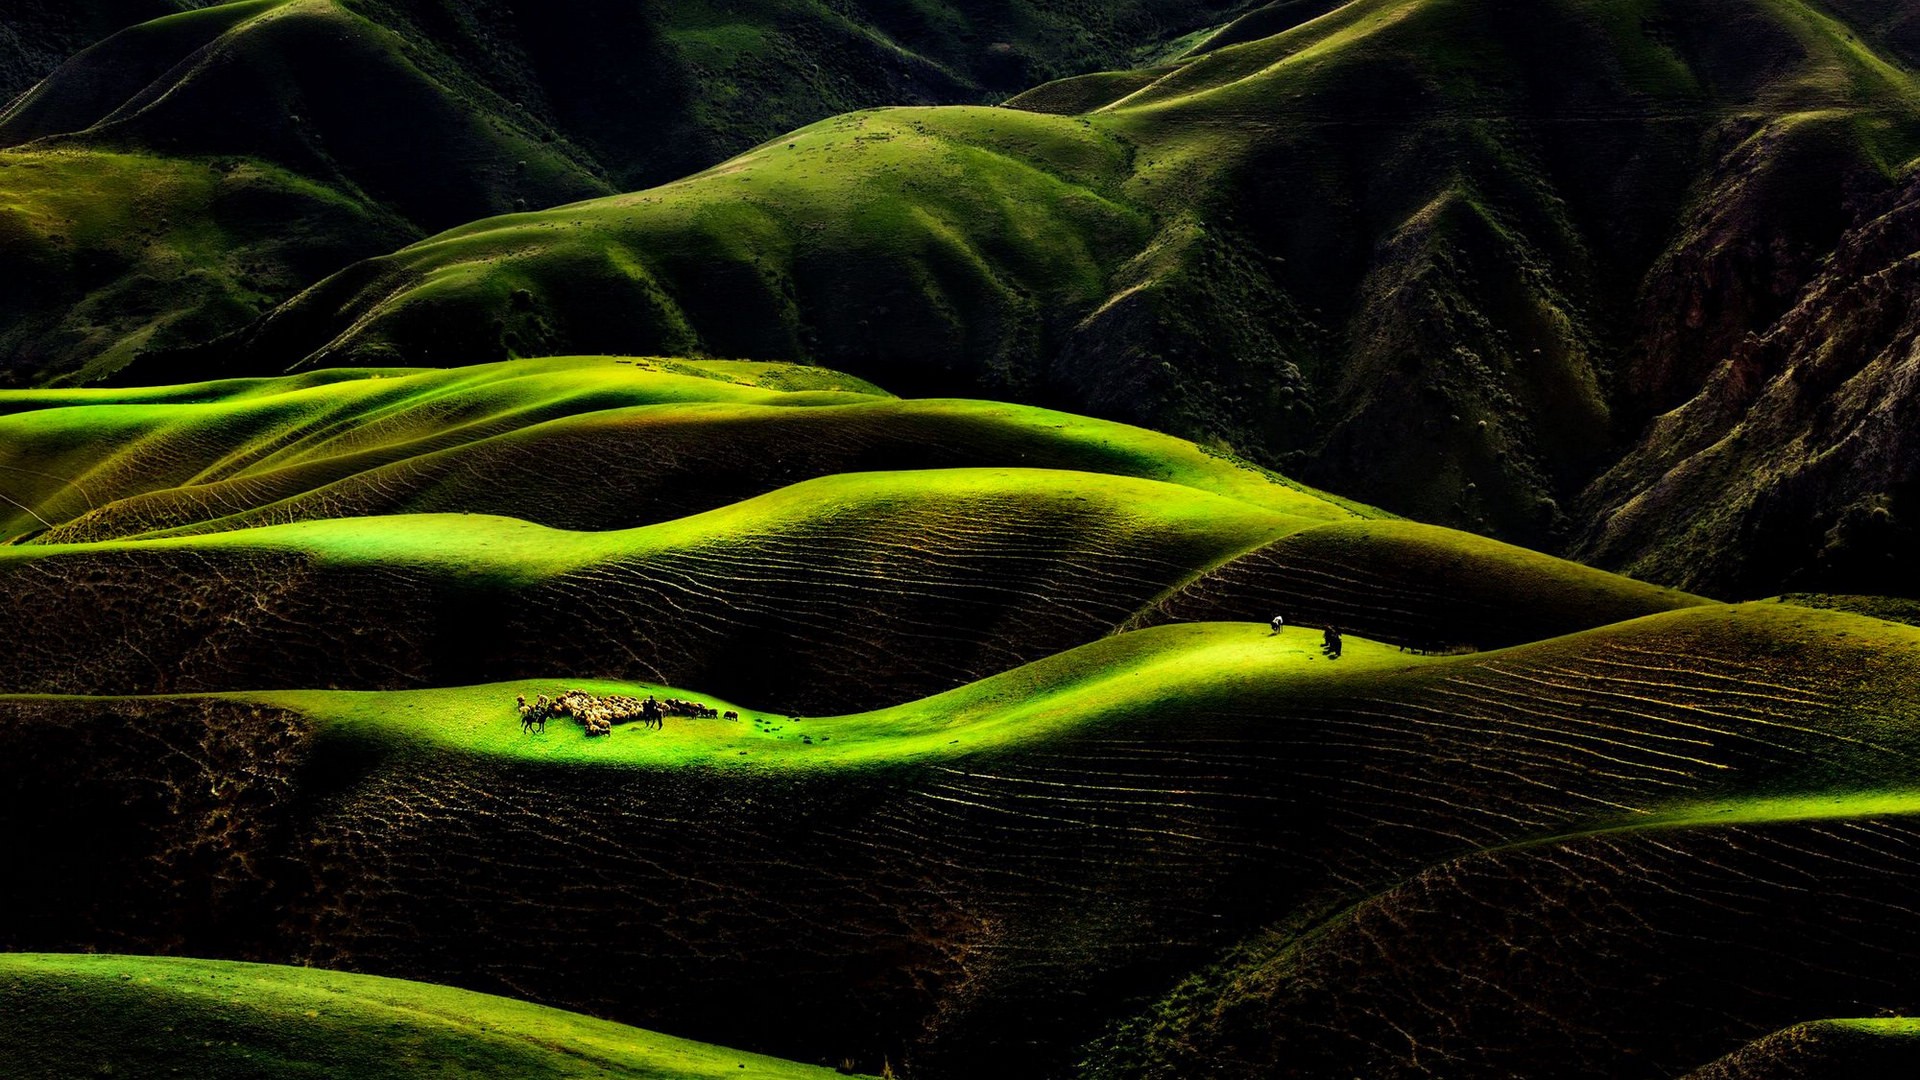 雨洗后的草原 新疆天山风景图片(7)